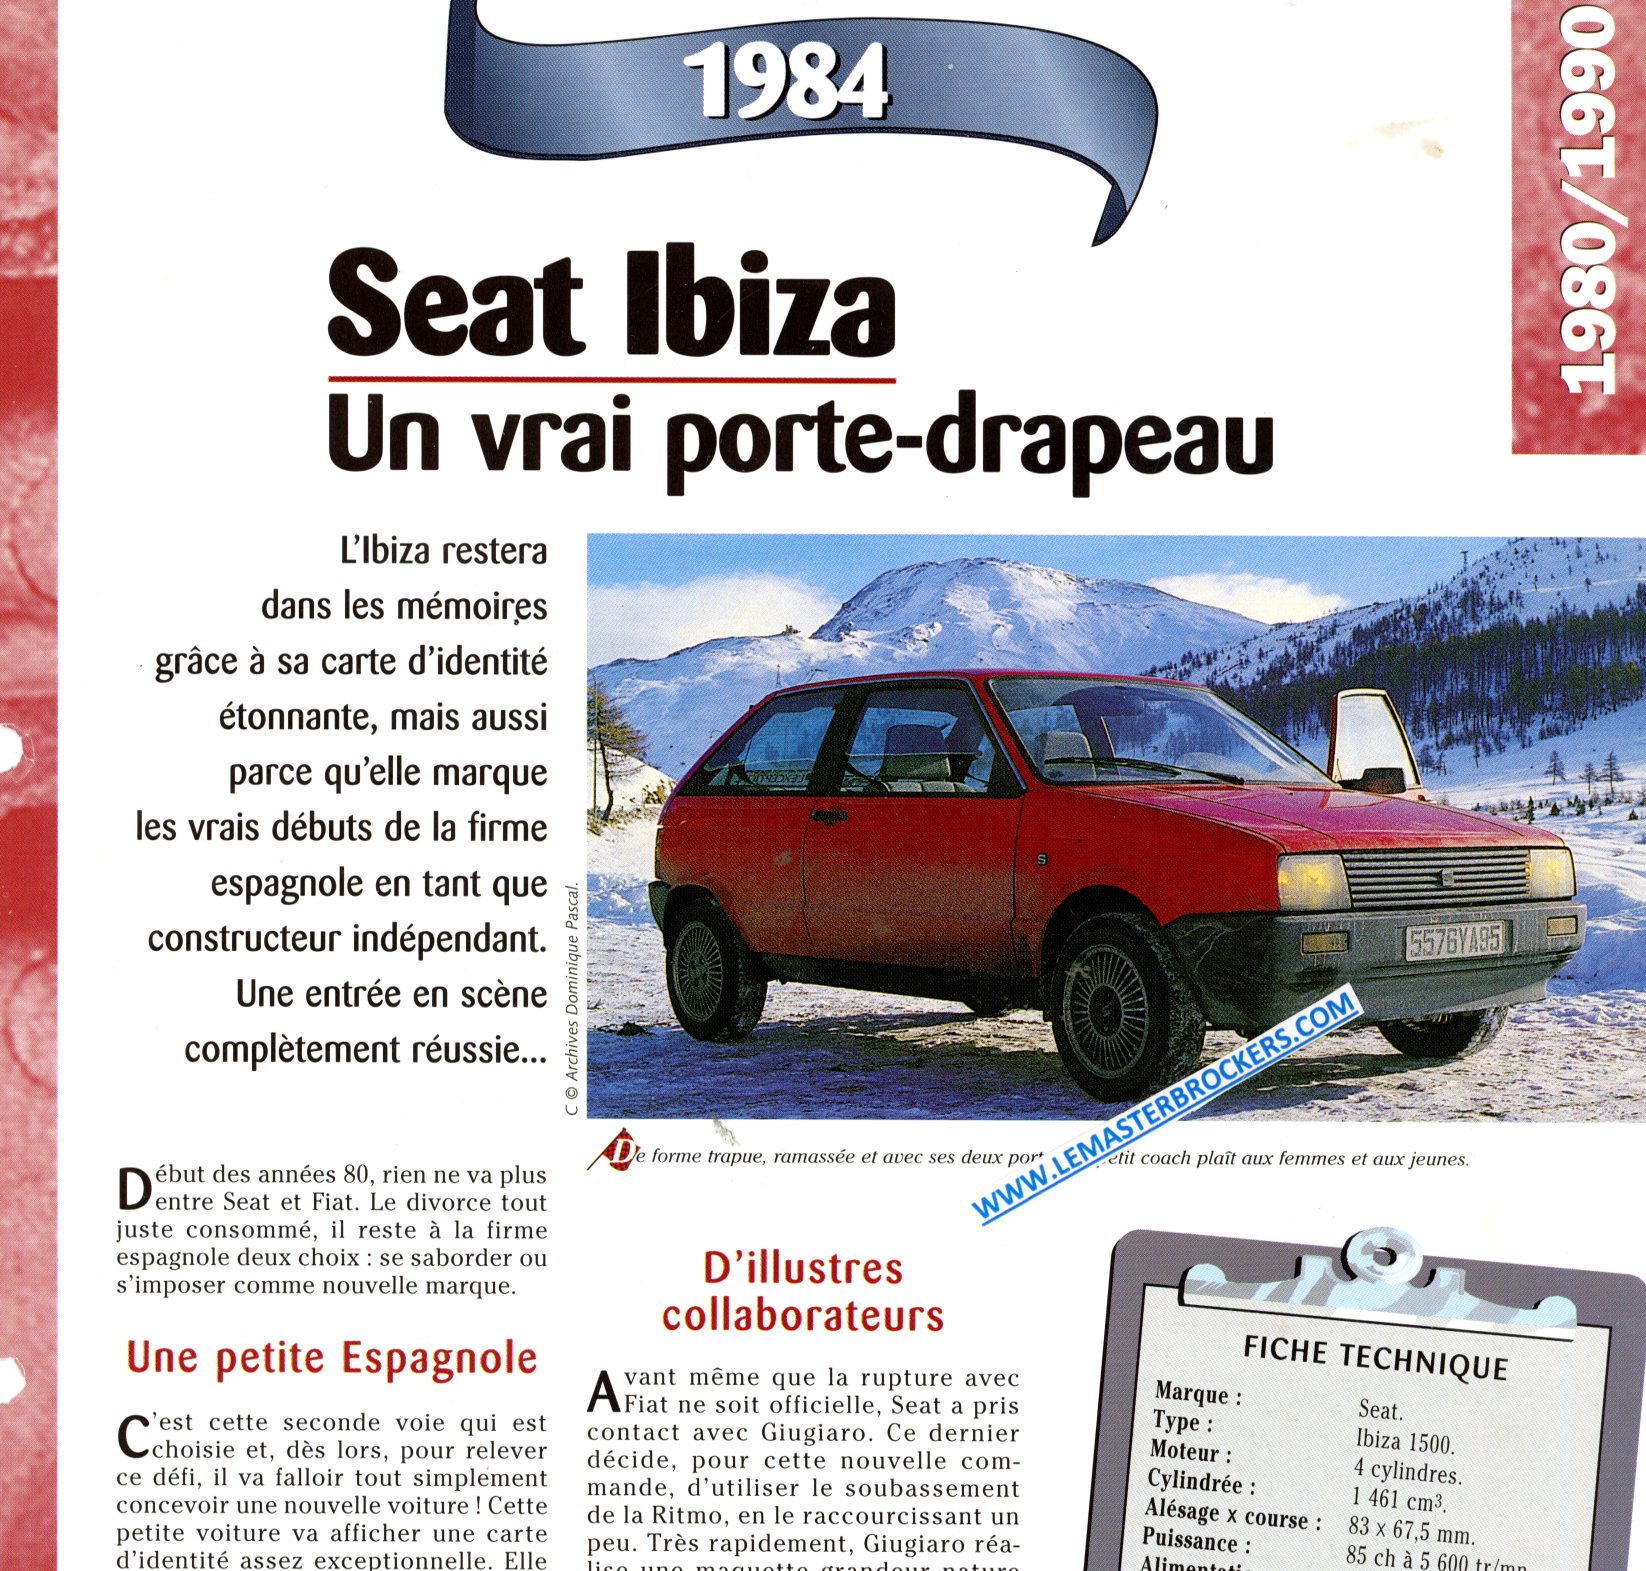 FICHE TECHNIQUE SEAT IBIZA 1984